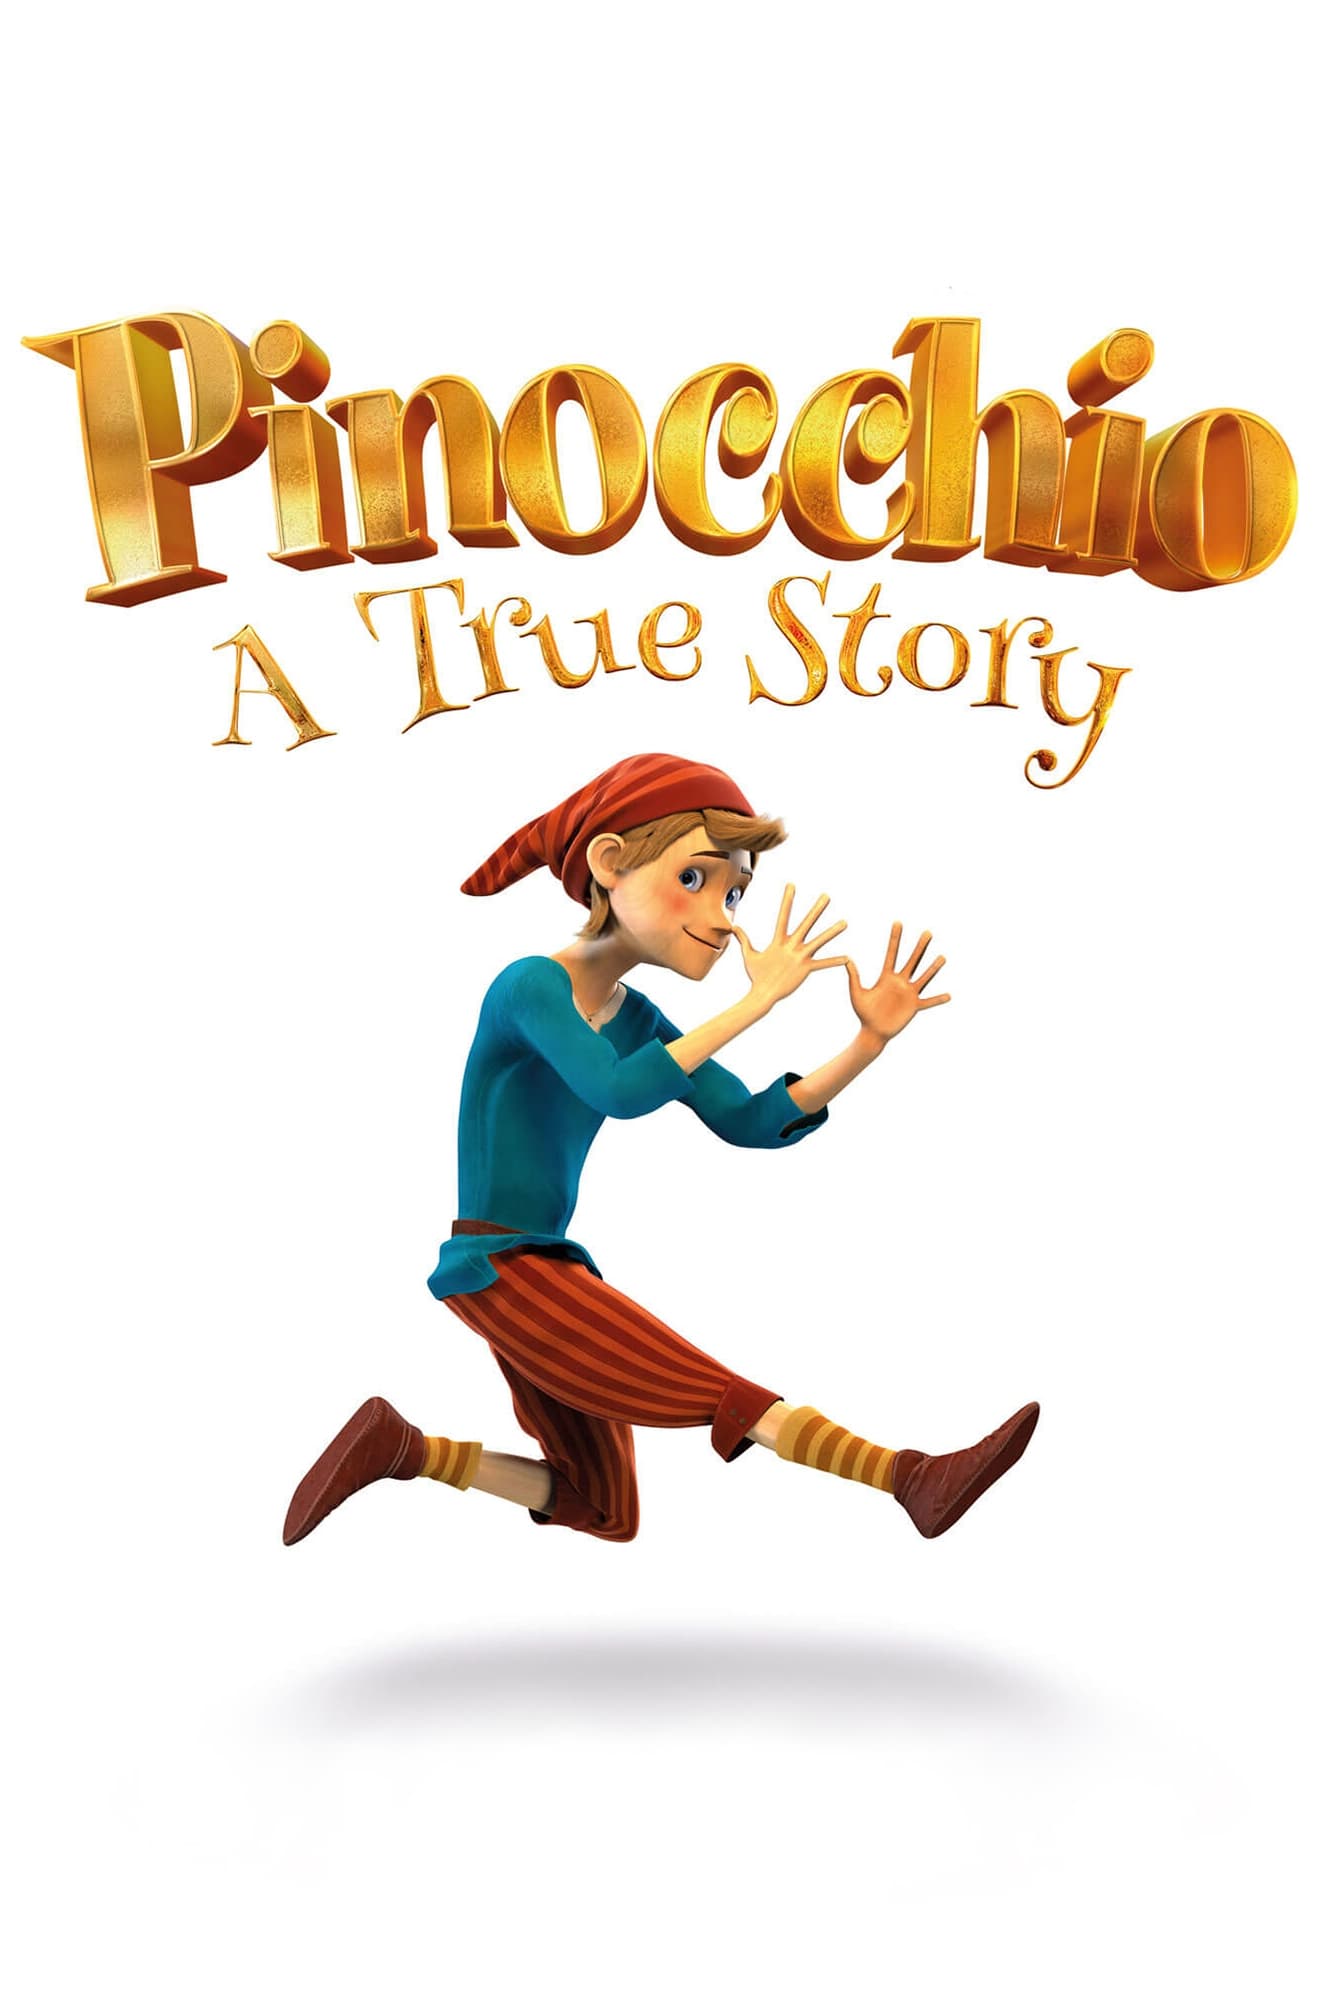 pinocchio story kanye genius